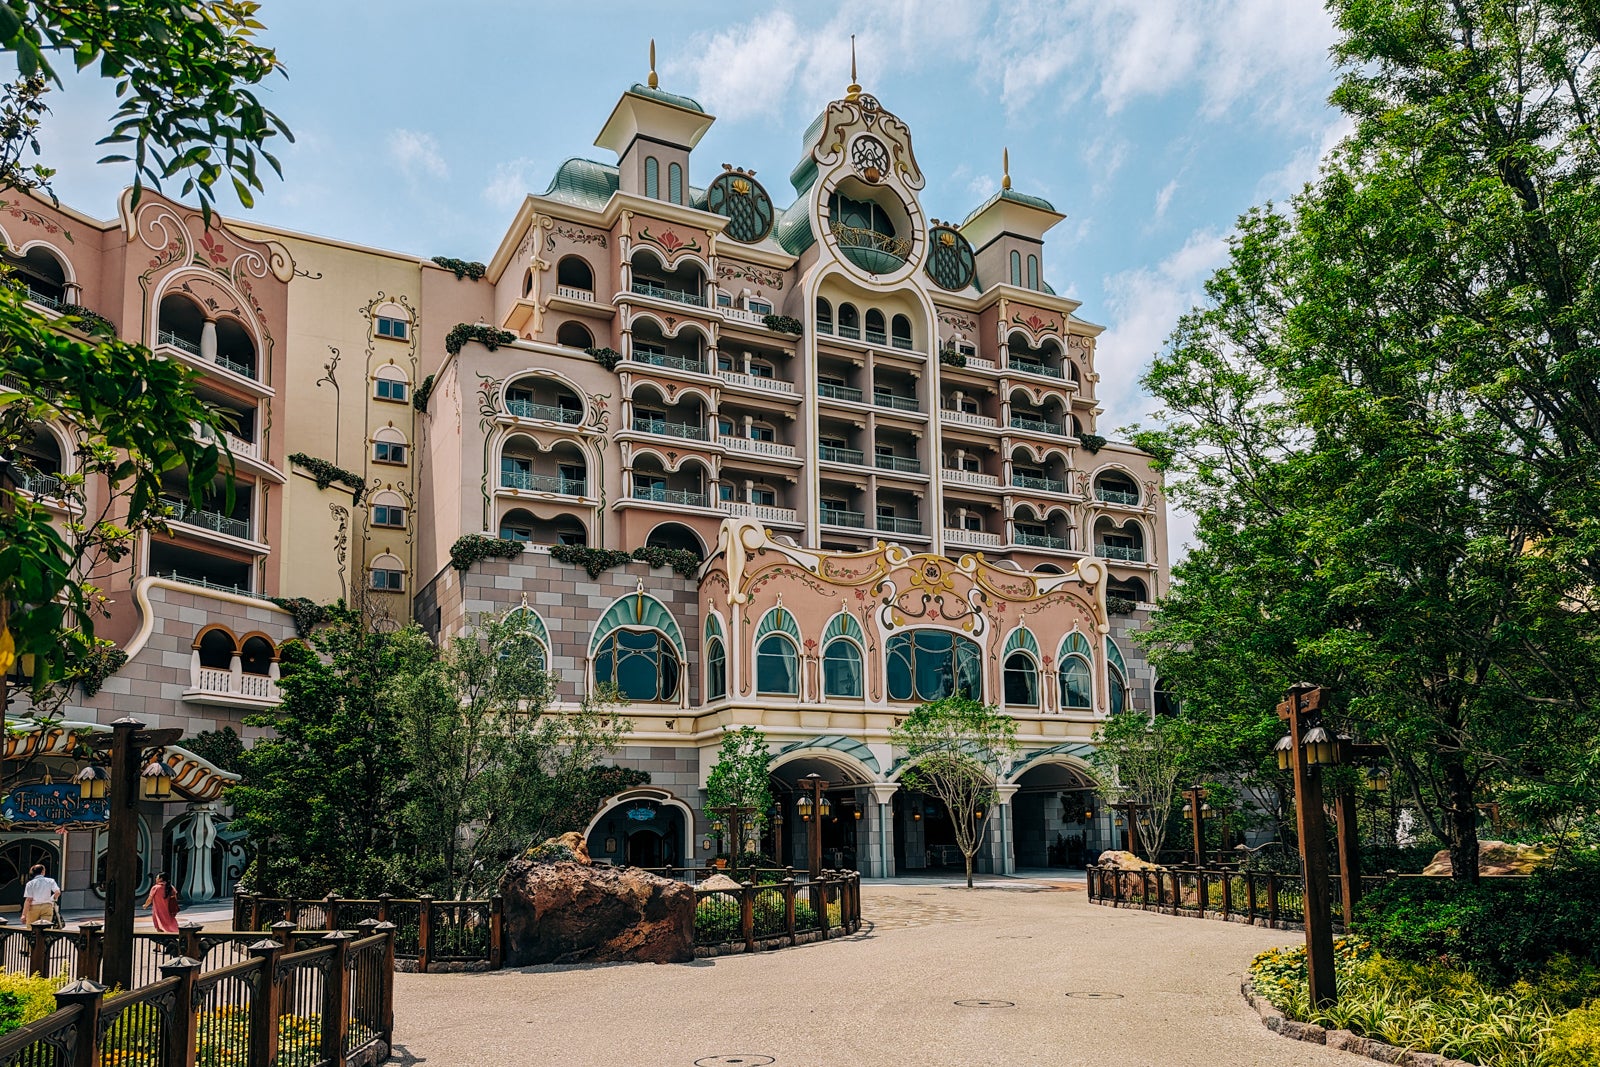 Tokyo DisneySea Fantasy Springs Hotel